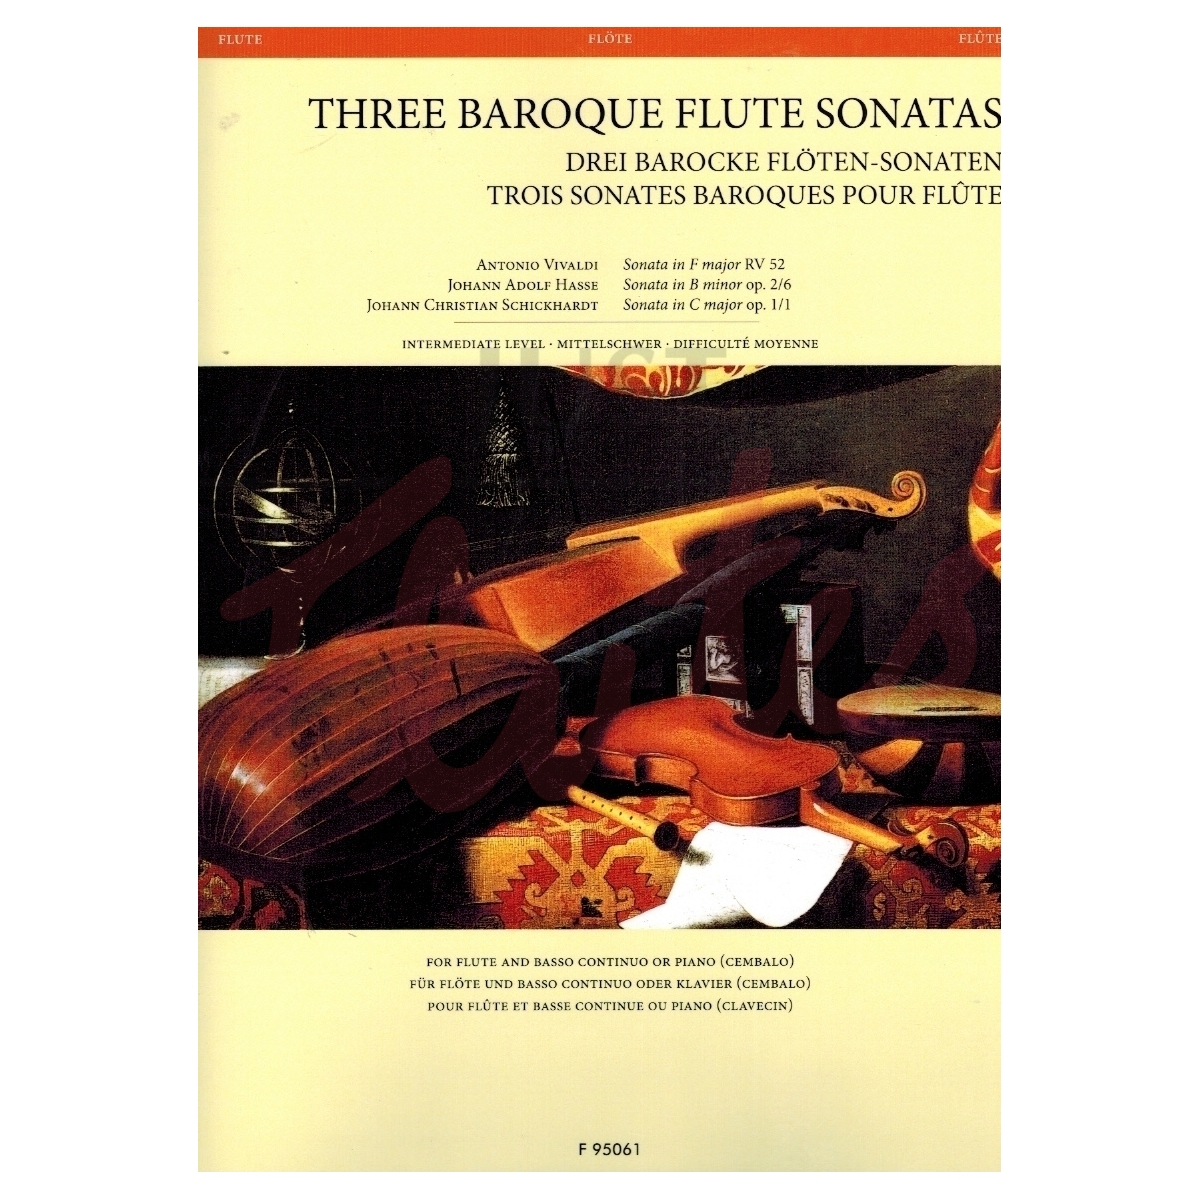 Three Baroque Flute Sonatas